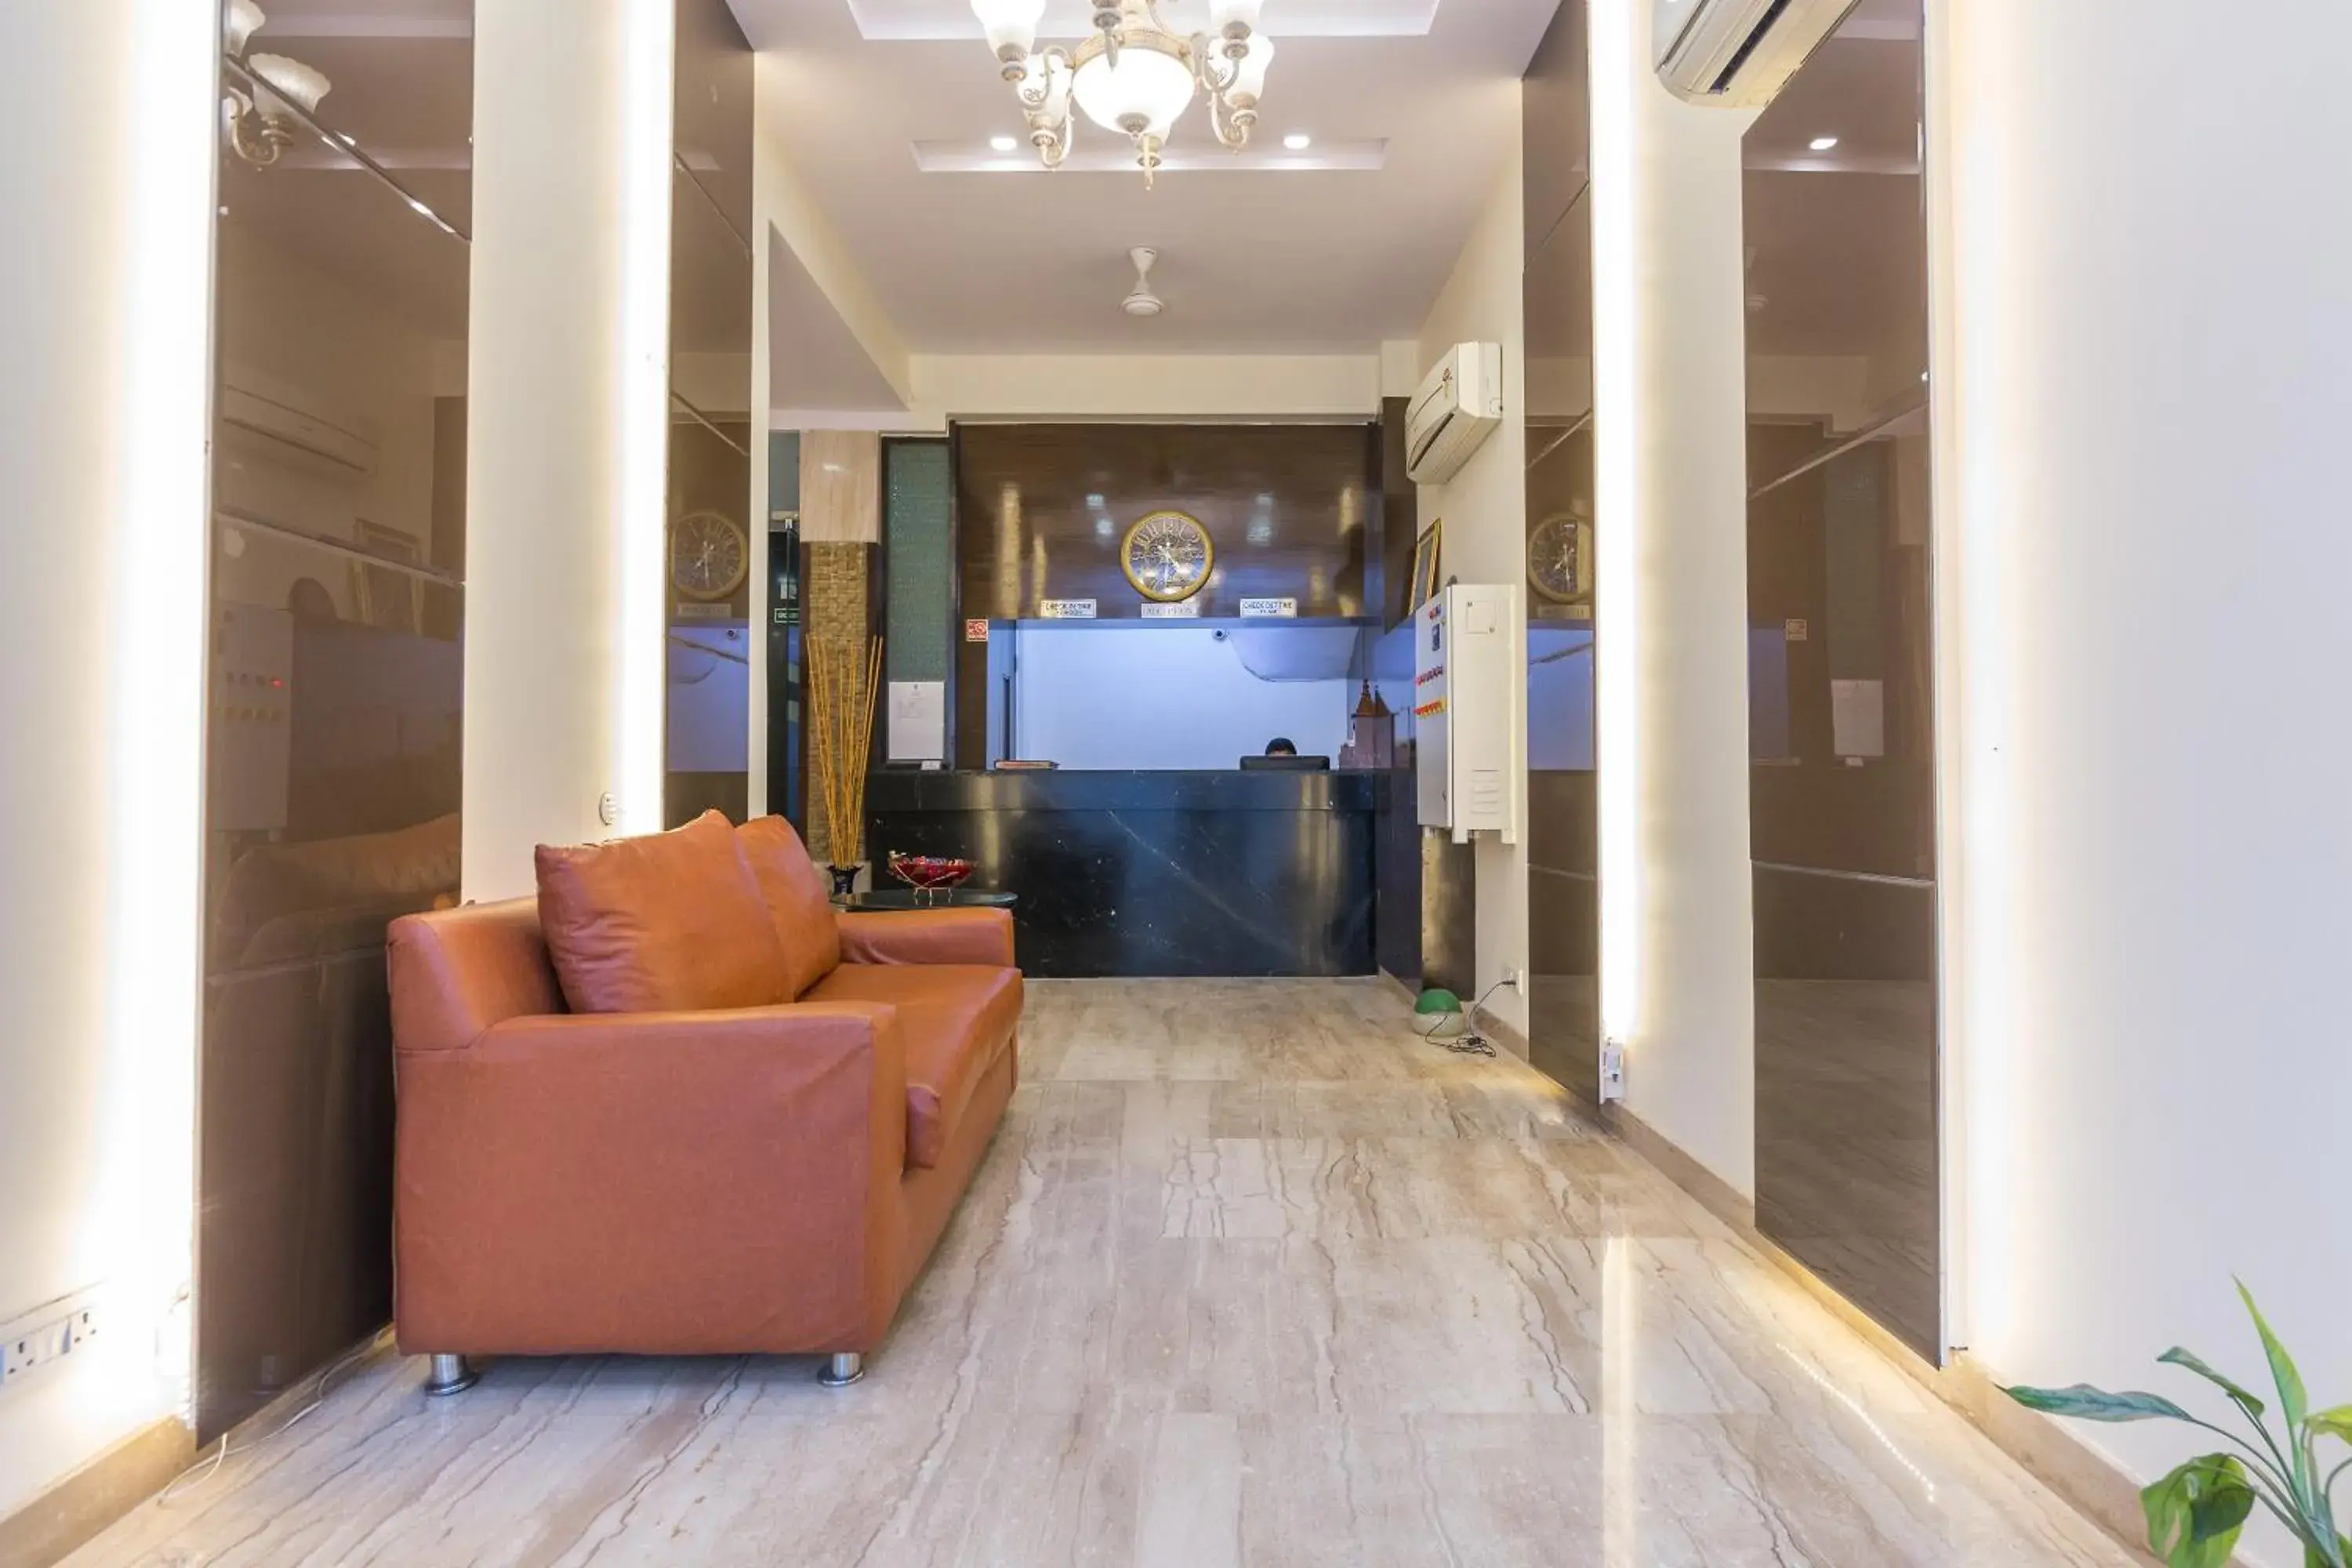 Lobby or reception, Lobby/Reception in Rupam Hotel